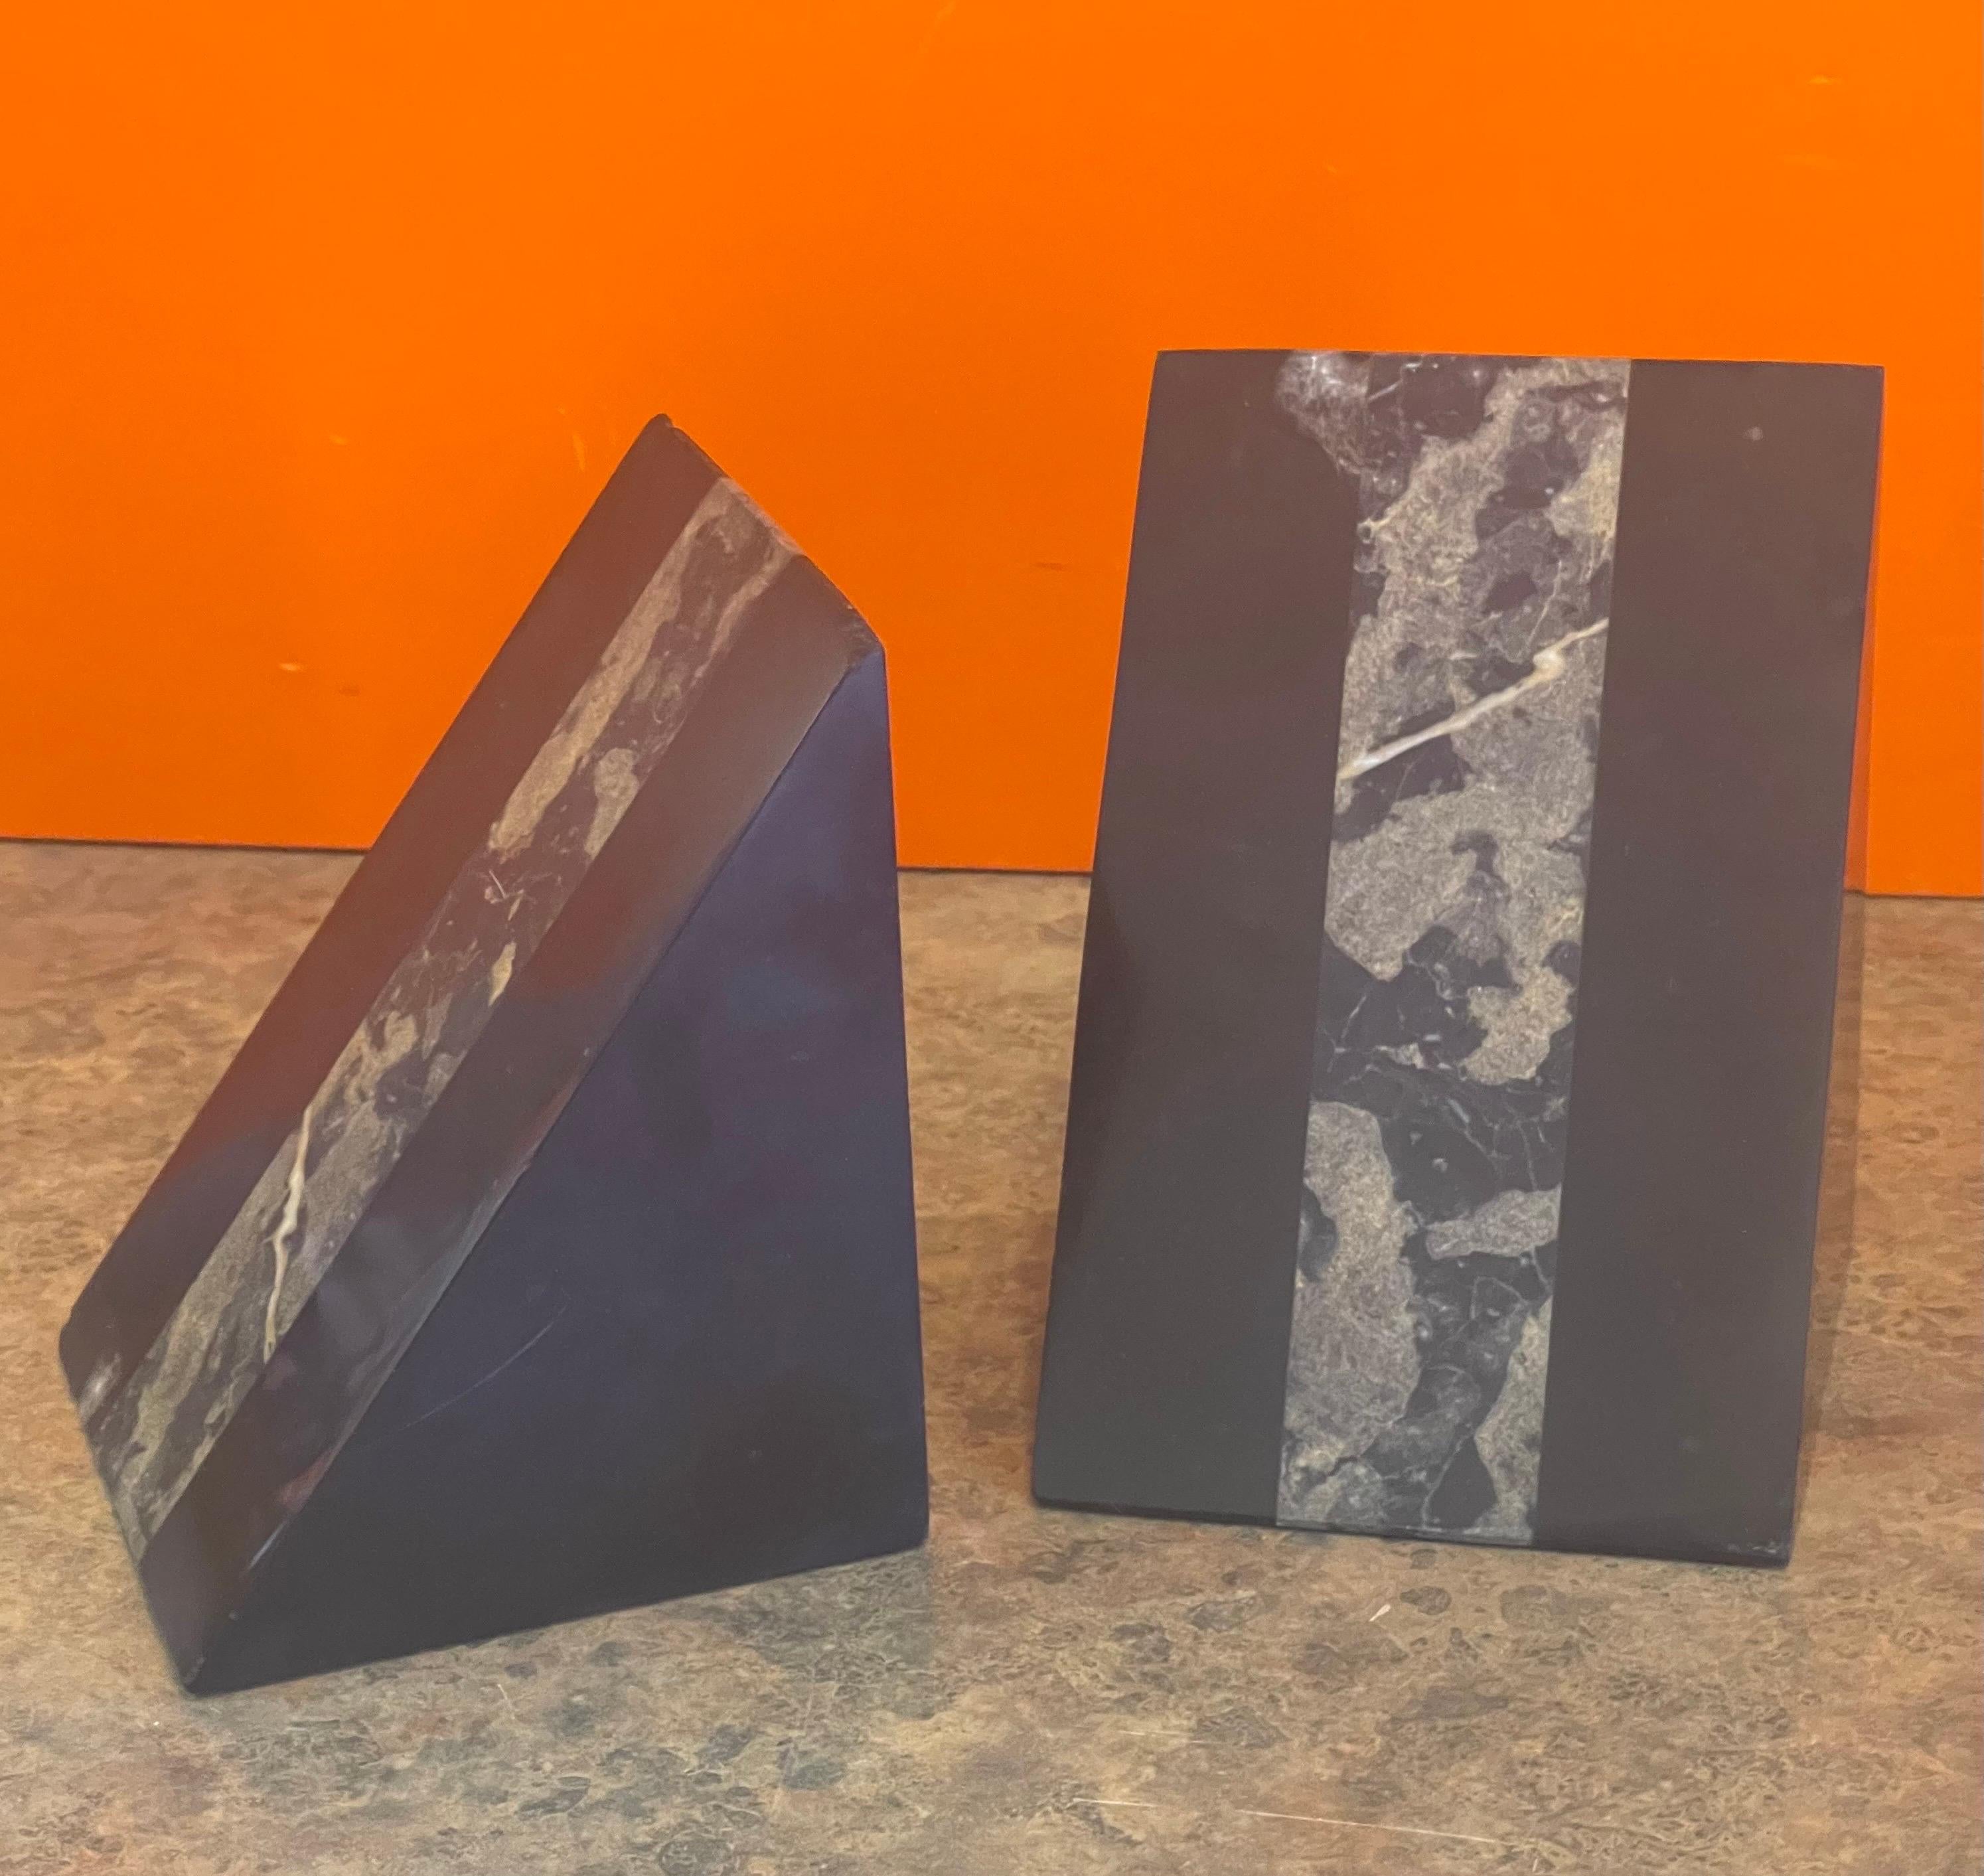 Attrayante paire de serre-livres triangulaires en marbre taillé Art déco, vers les années 1940. Ils sont en état d'origine avec une belle patine et quelques petits éclats dans les coins (voir photos) ; la paire mesure 7.75 